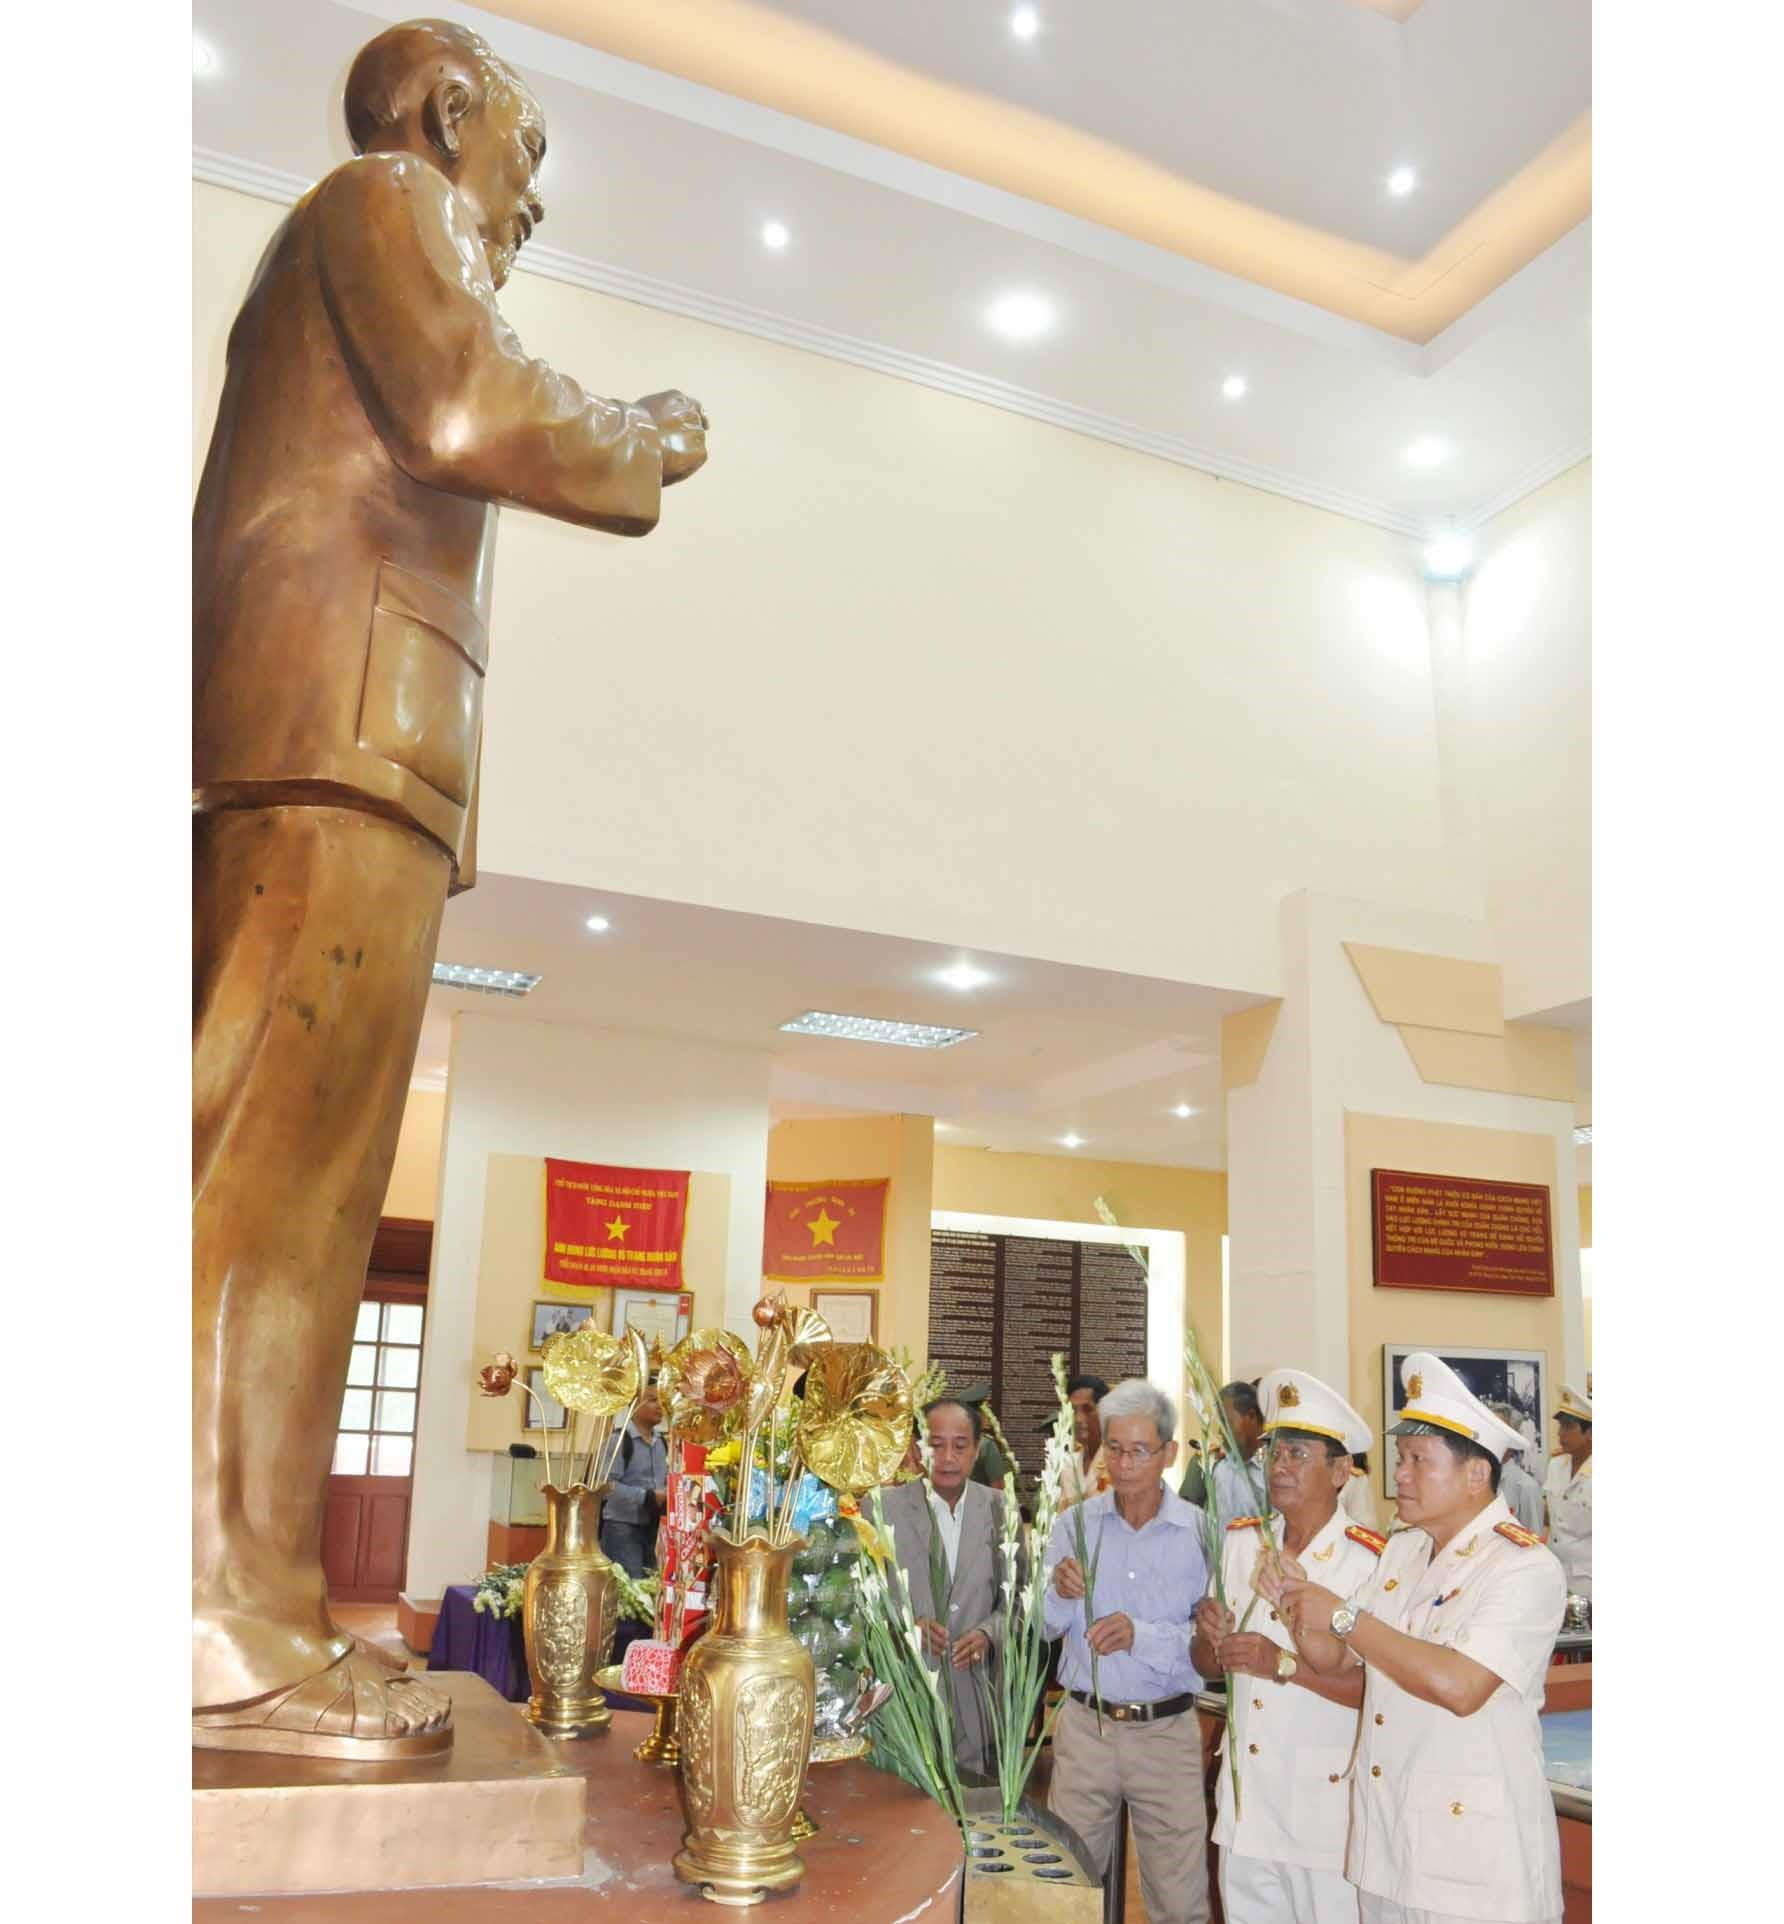 Các đại biểu dâng hoa tưởng nhớ công lao to lớn của Chủ tịch Hồ Chí Minh tại Nhà truyền thống Khu di tích An ninh Khu 5 (xã Trà Tân, Bắc Trà My). Ảnh: N.Đ